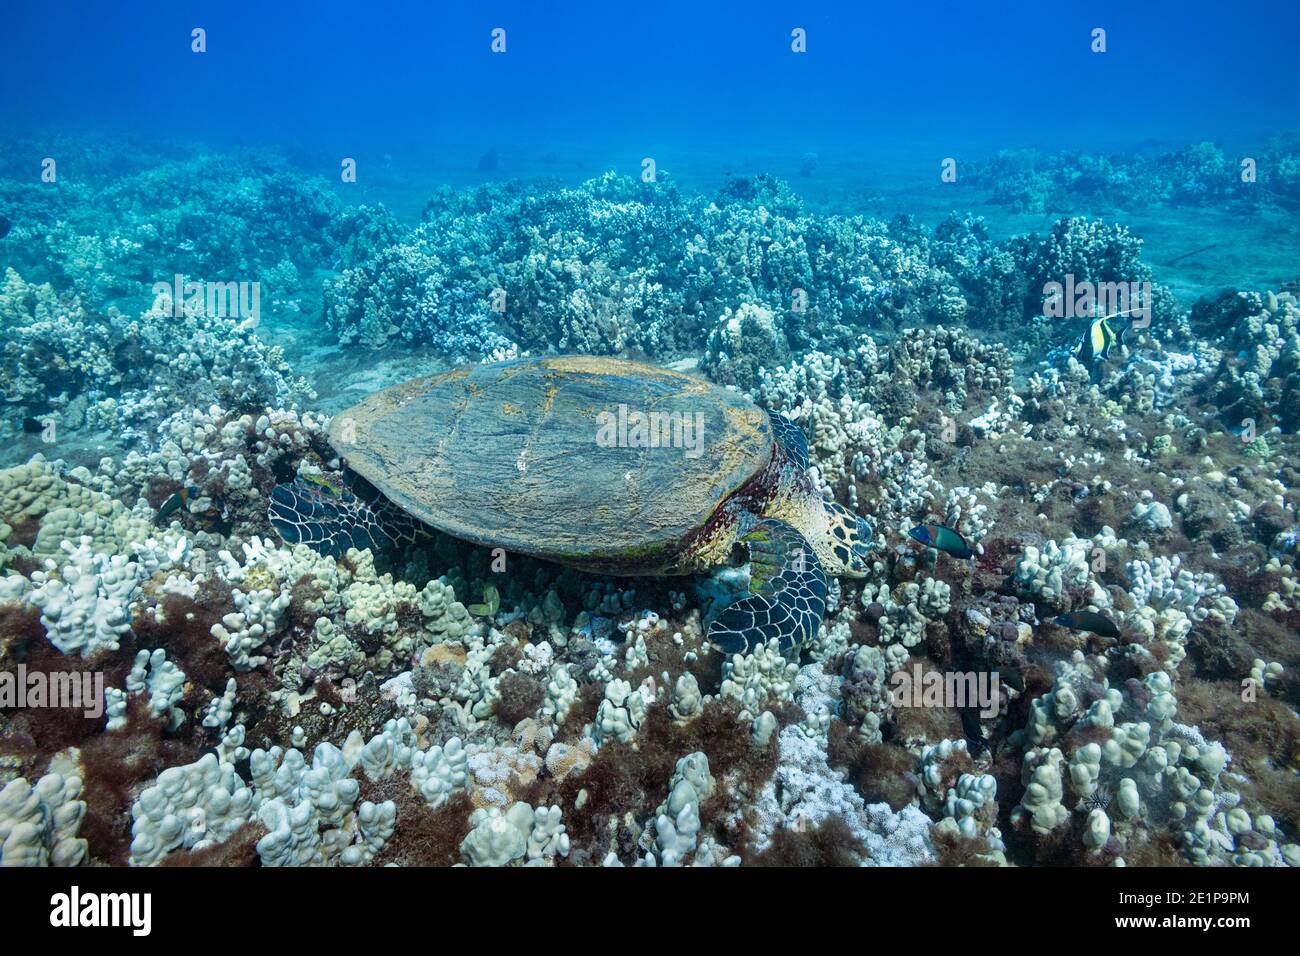 tartaruga marina hawksbill, Eretmochelys imbricata (specie in via di estinzione), si nutre di alghe e invertebrati che crescono sulla barriera corallina, Kahekili Beach Park, Maui Foto Stock